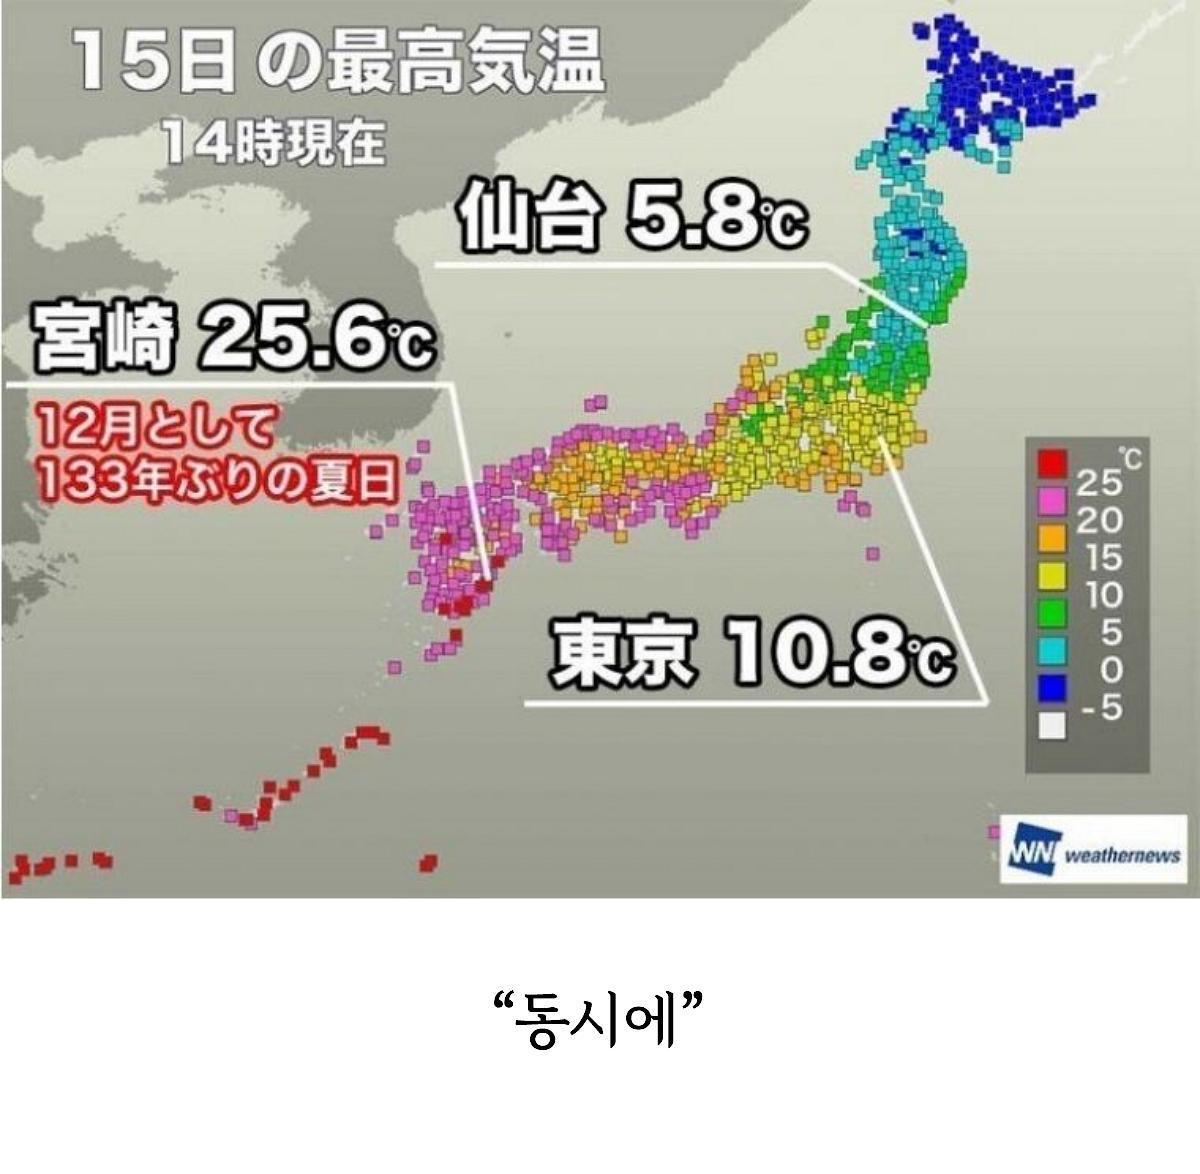 일본은 4계절이 있는 유일한 나라다.png.jpg